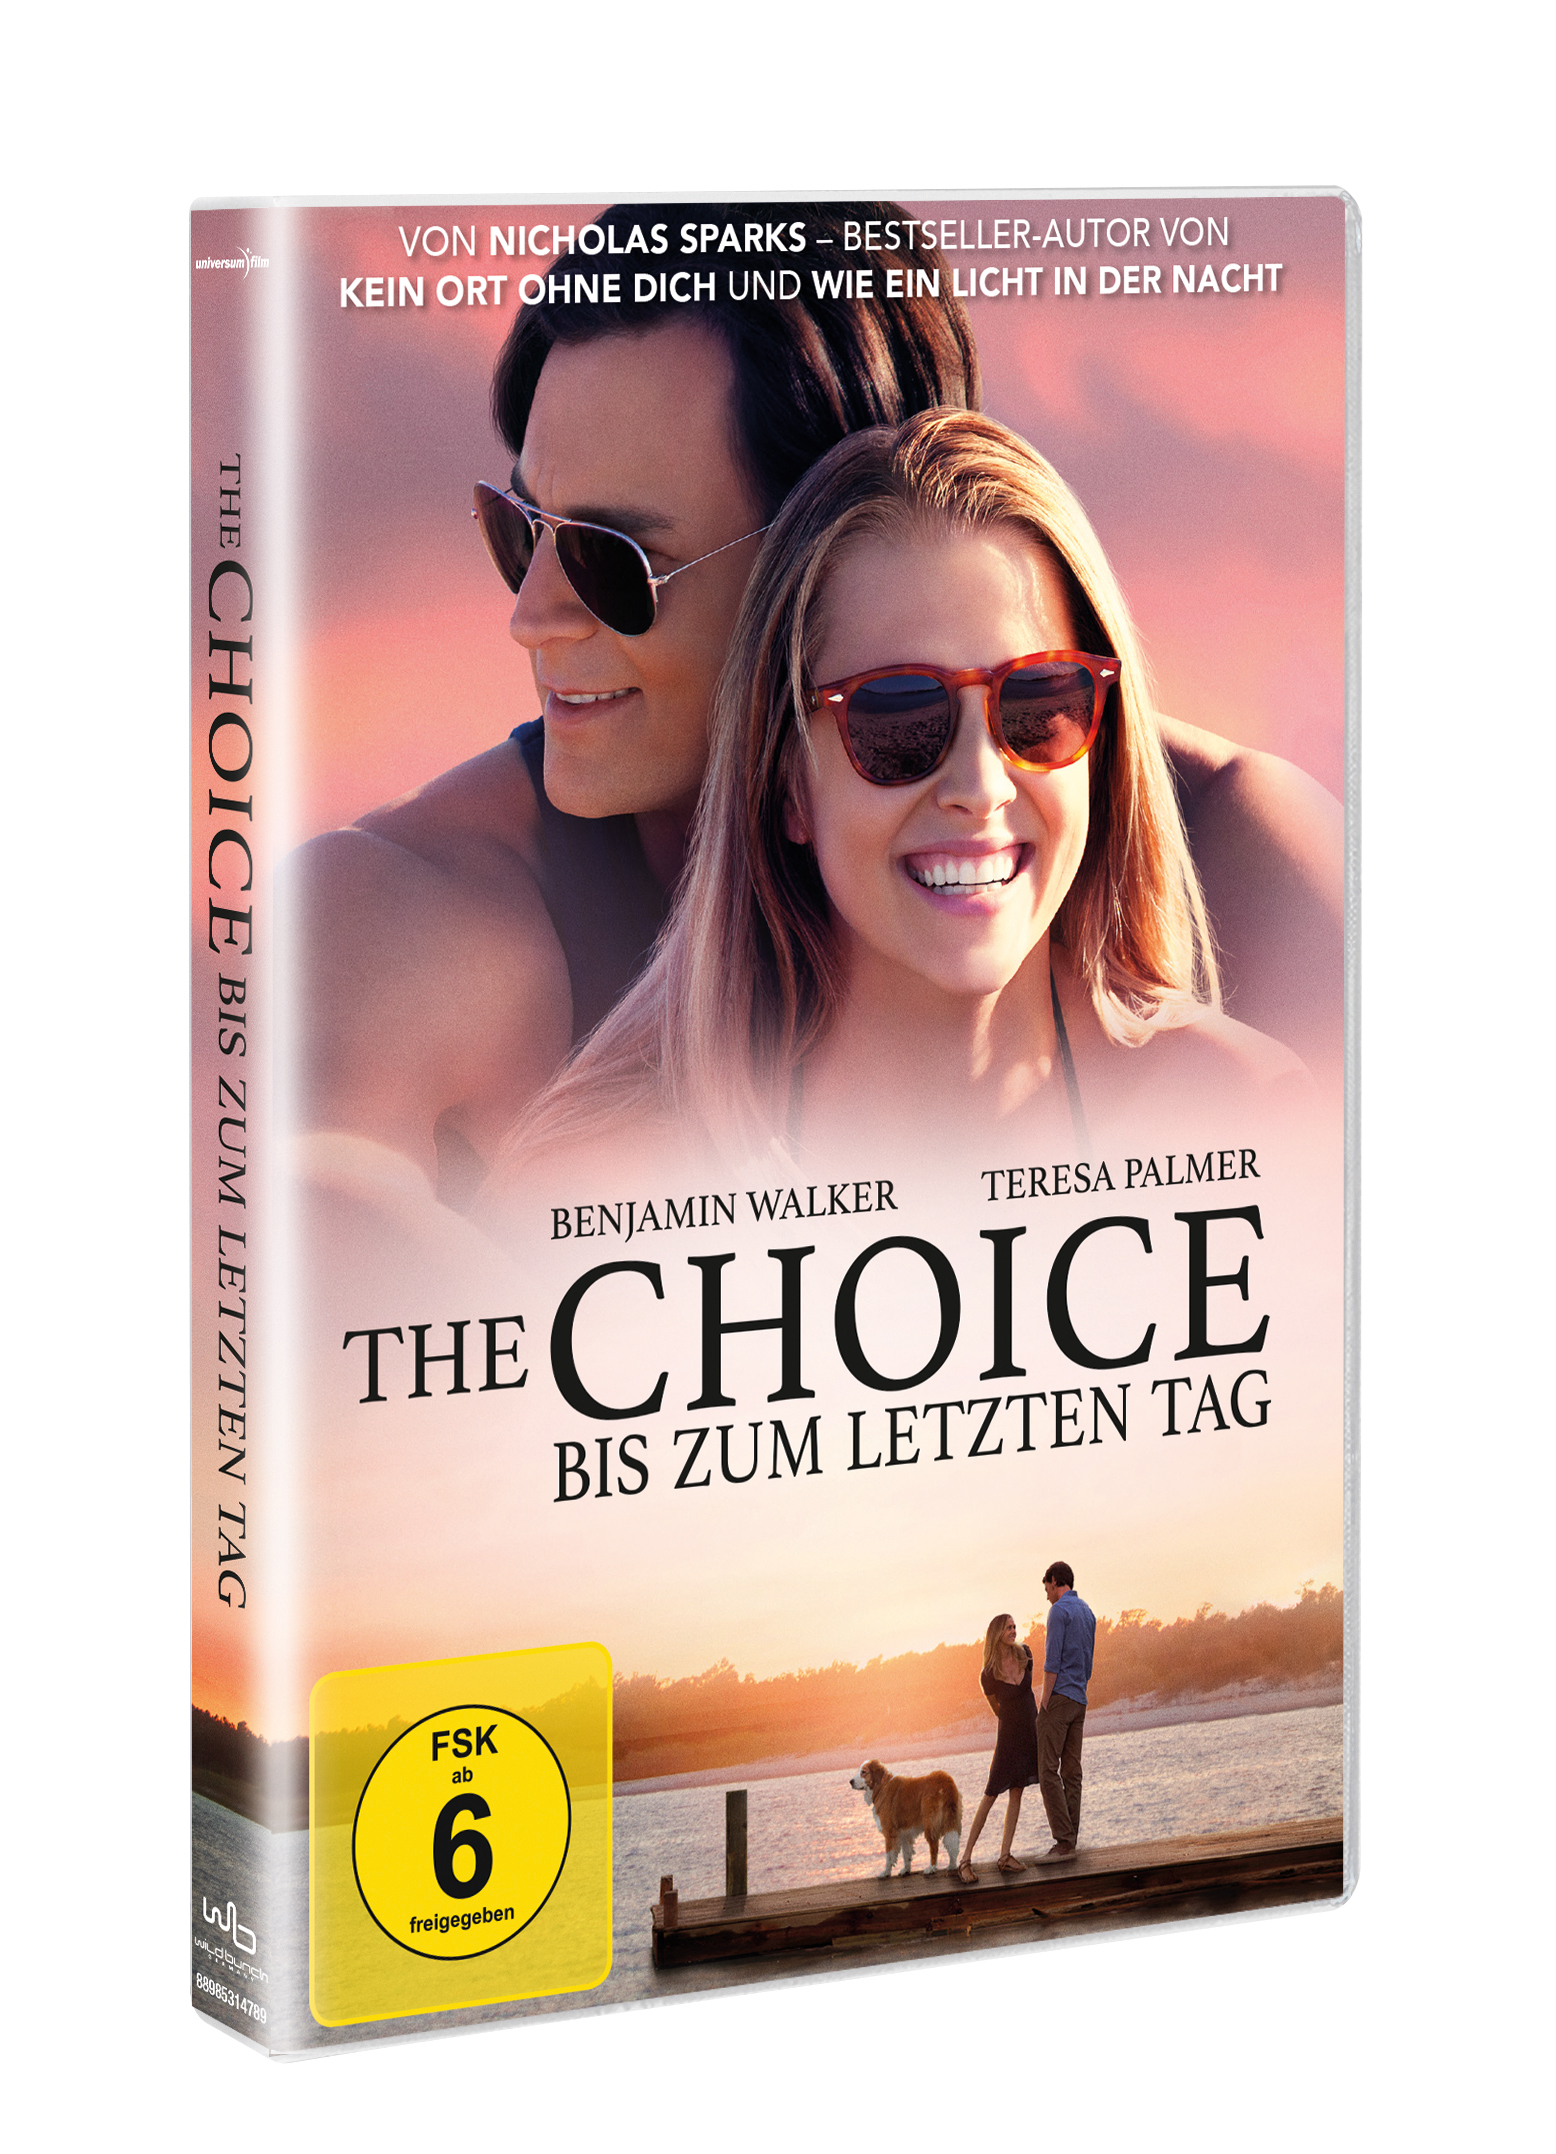 Tag letzten Bis Choice The DVD - zum